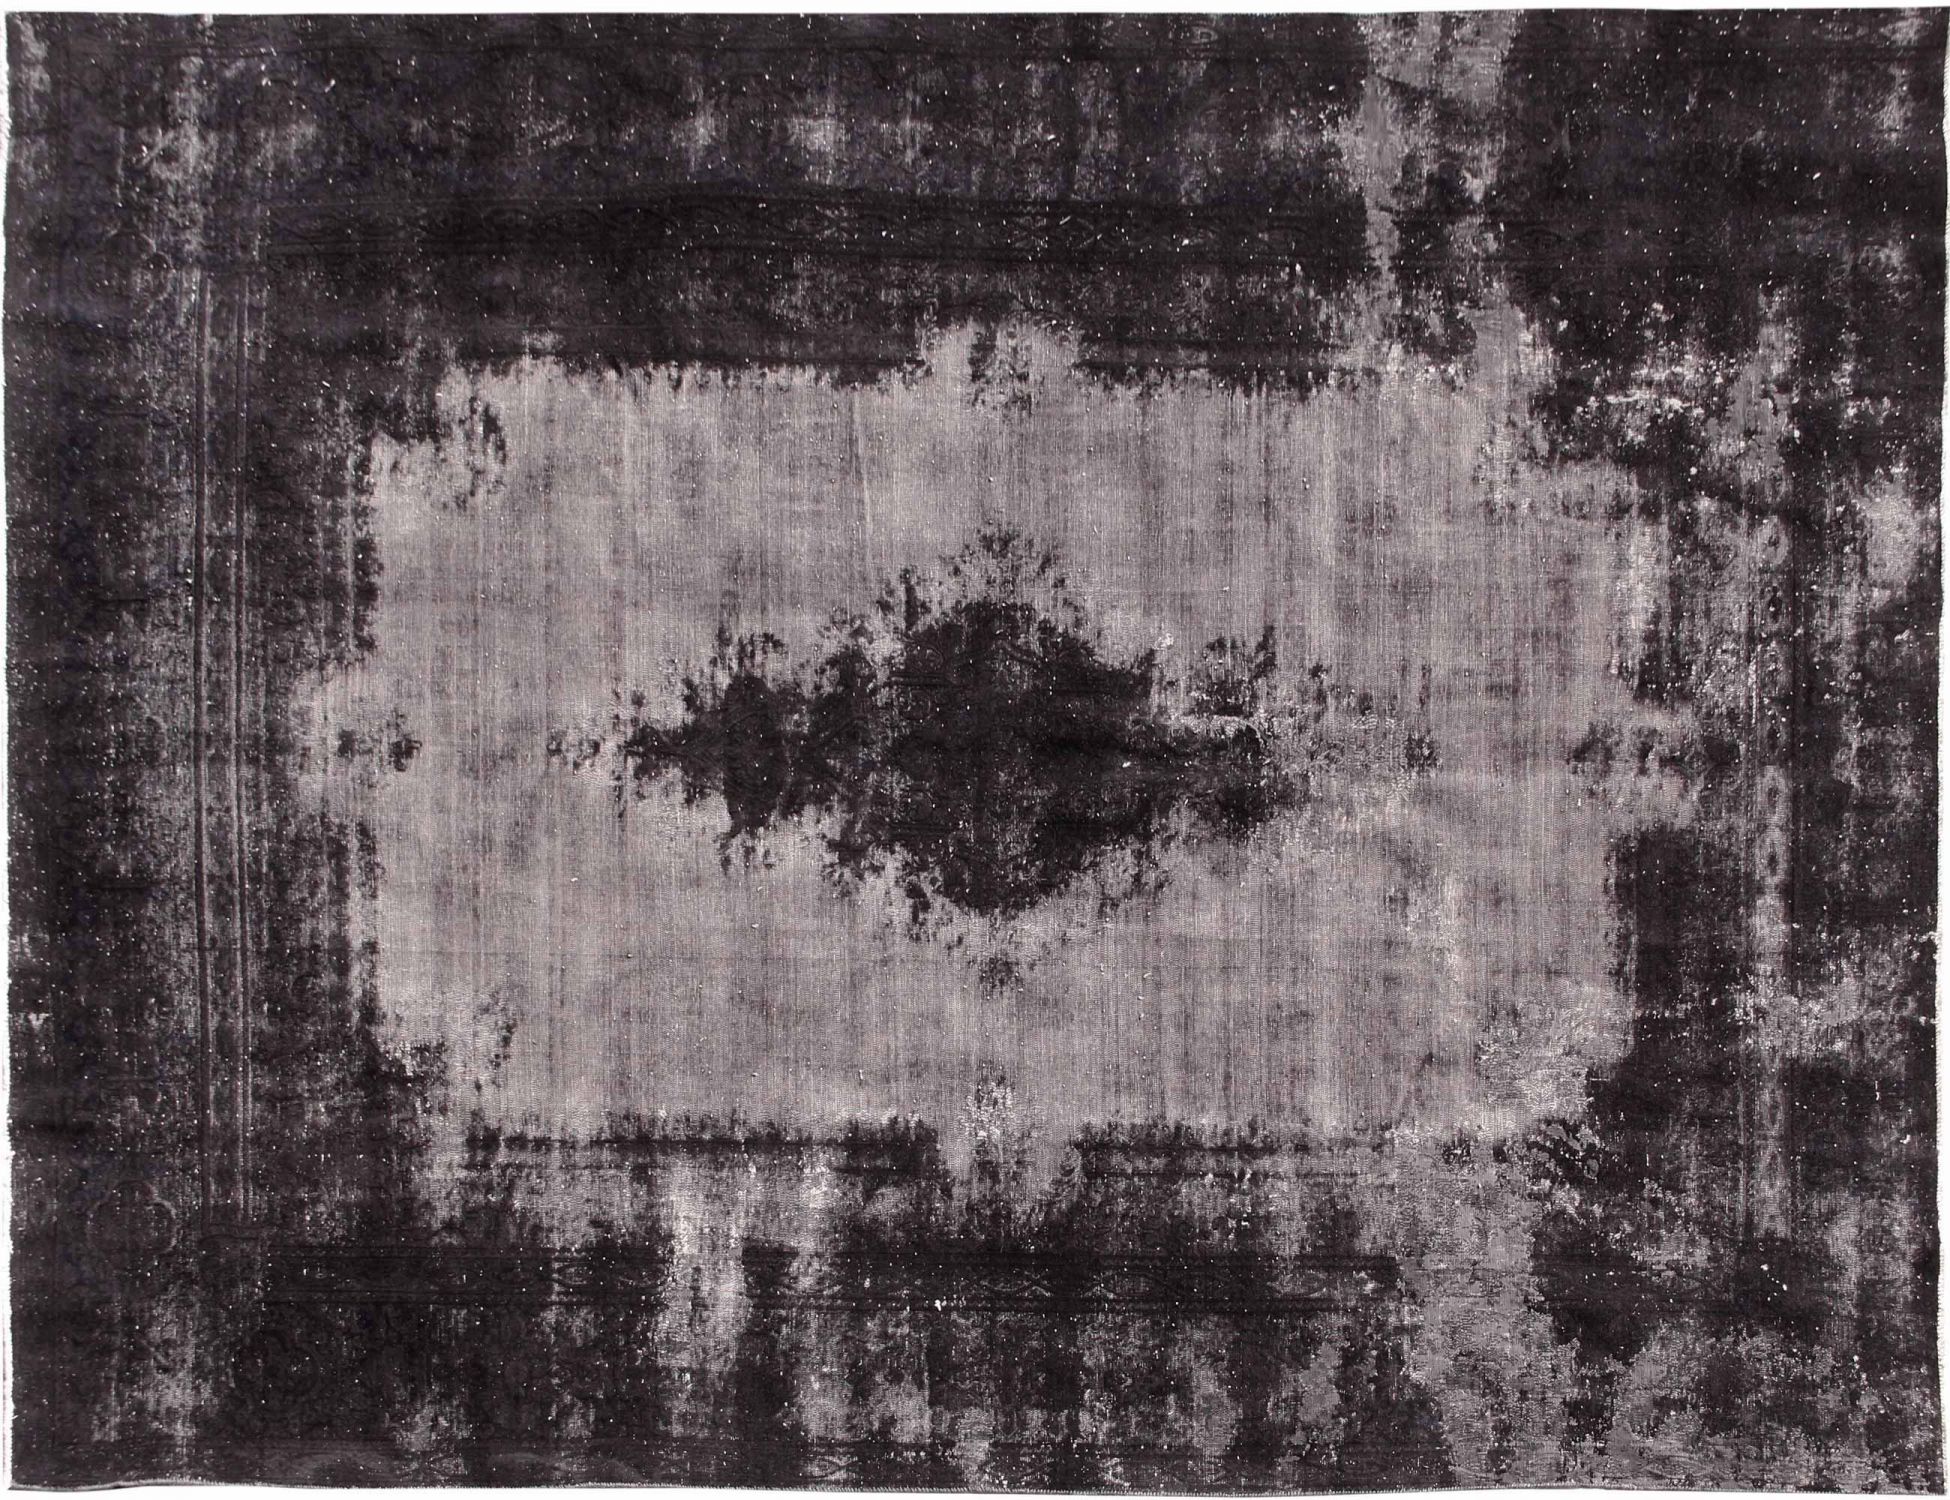 Persian Vintage Carpet  black <br/>392 x 200 cm